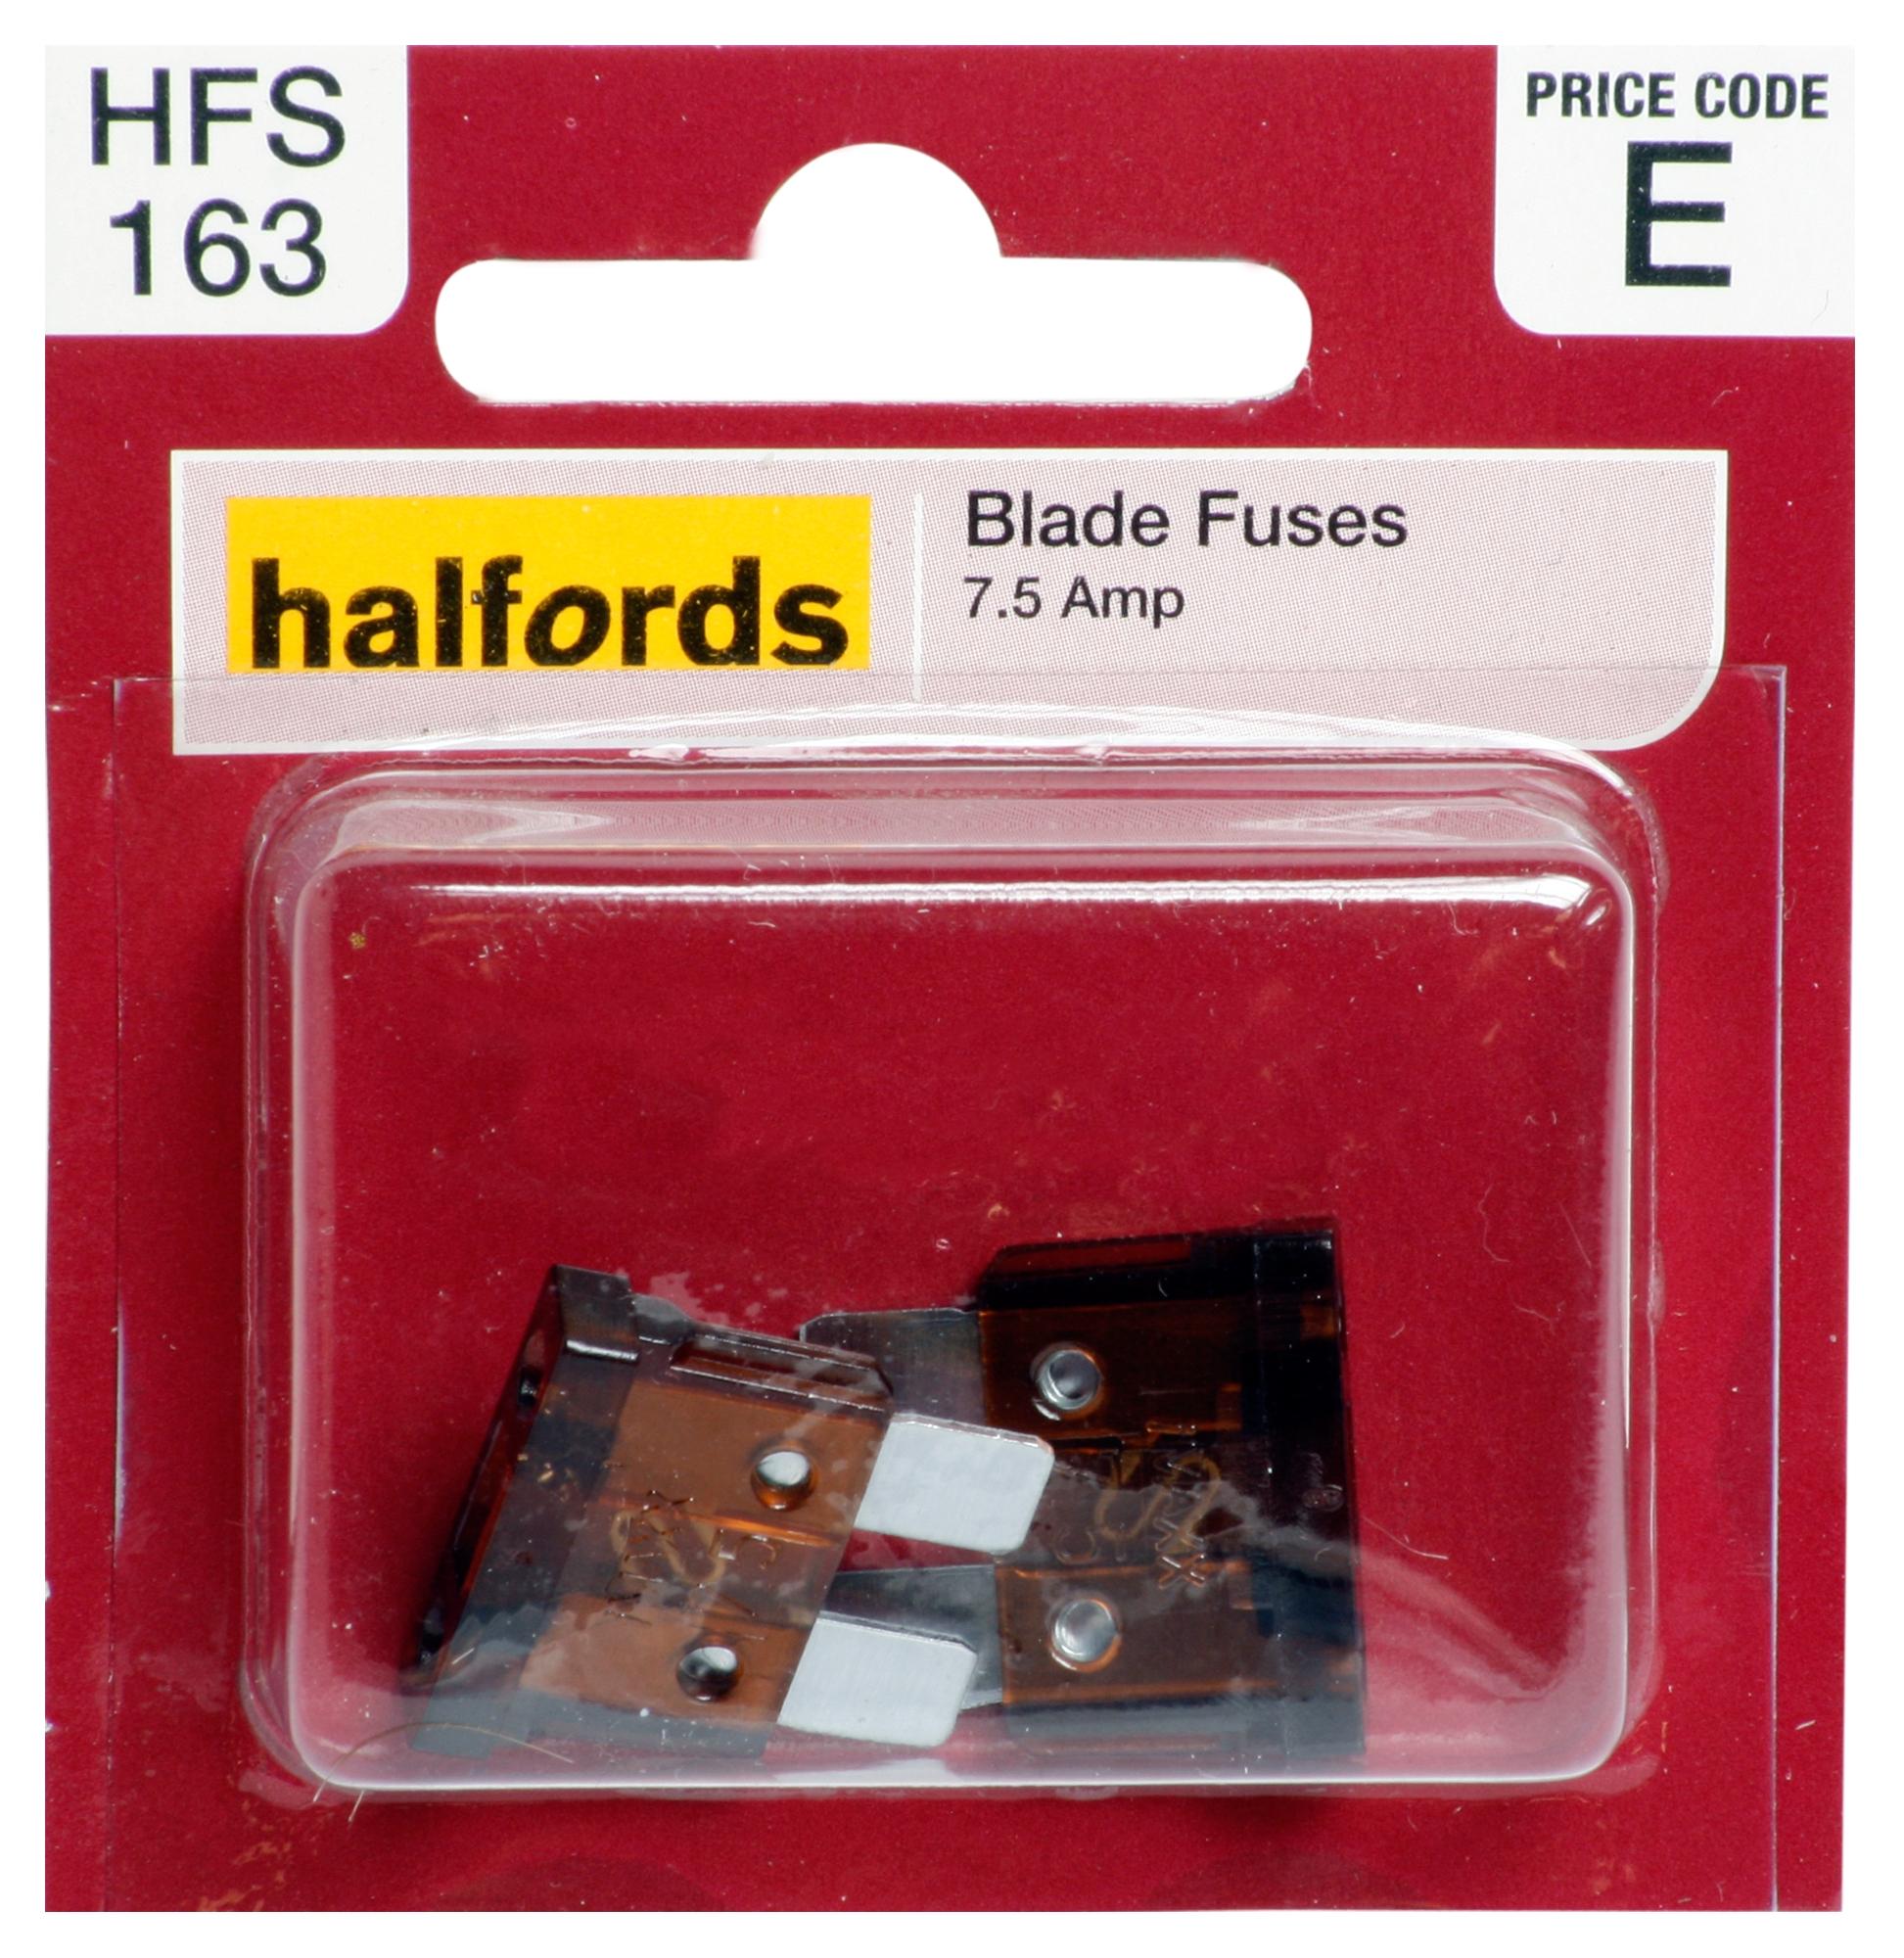 Halfords Blade Fuses 7.5 Amp (Hfs163)